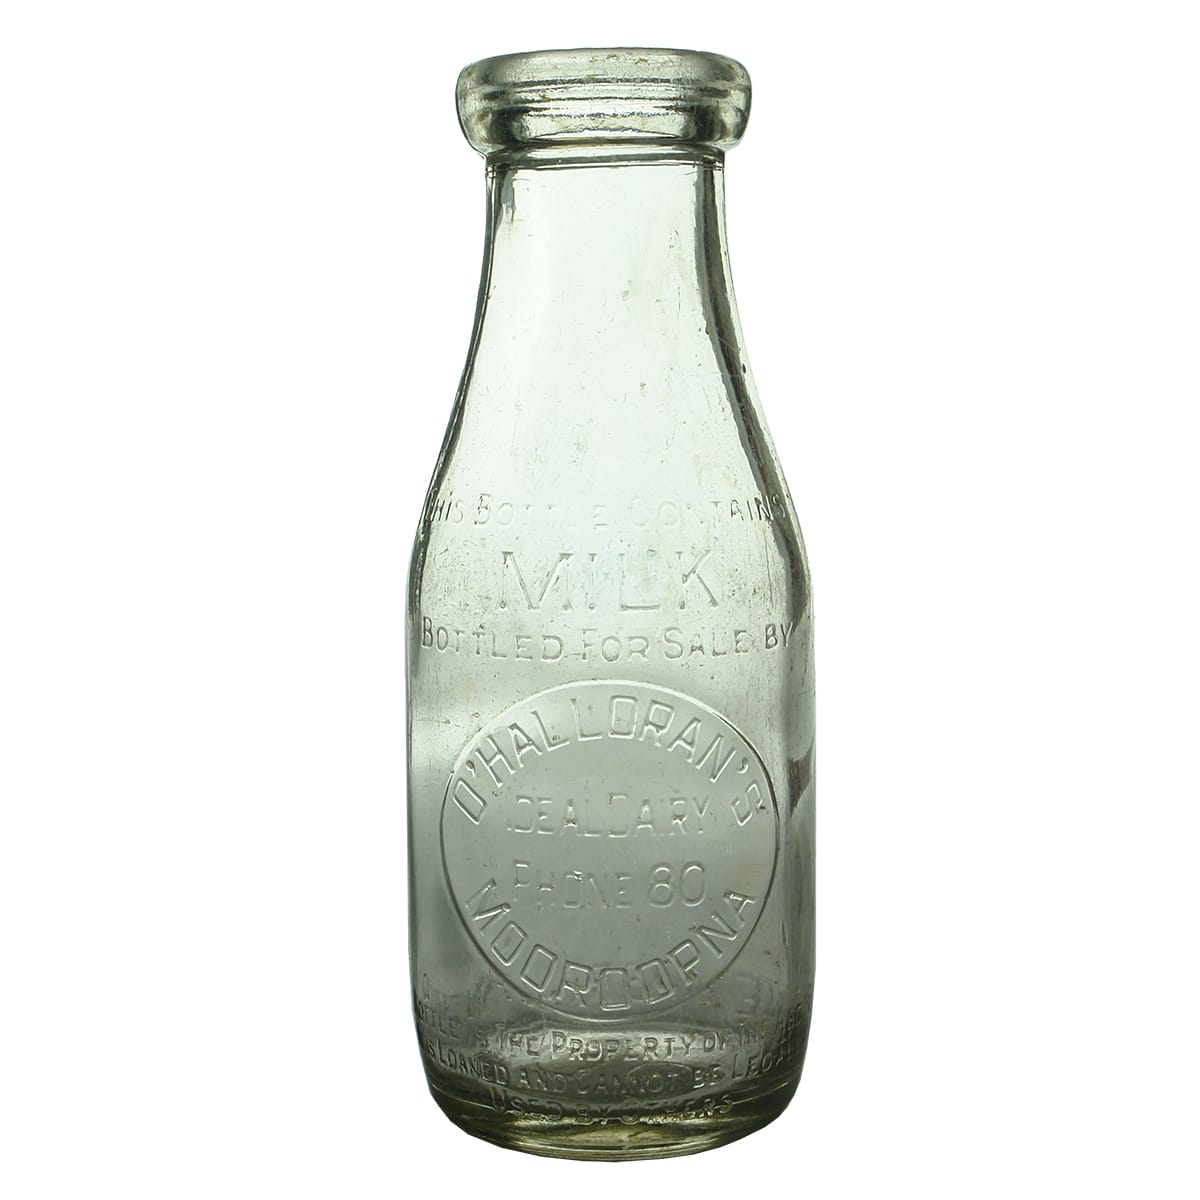 Milk. O'Halloran's Ideal Dairy, Mooroopna. Wad lip. 1 Pint.